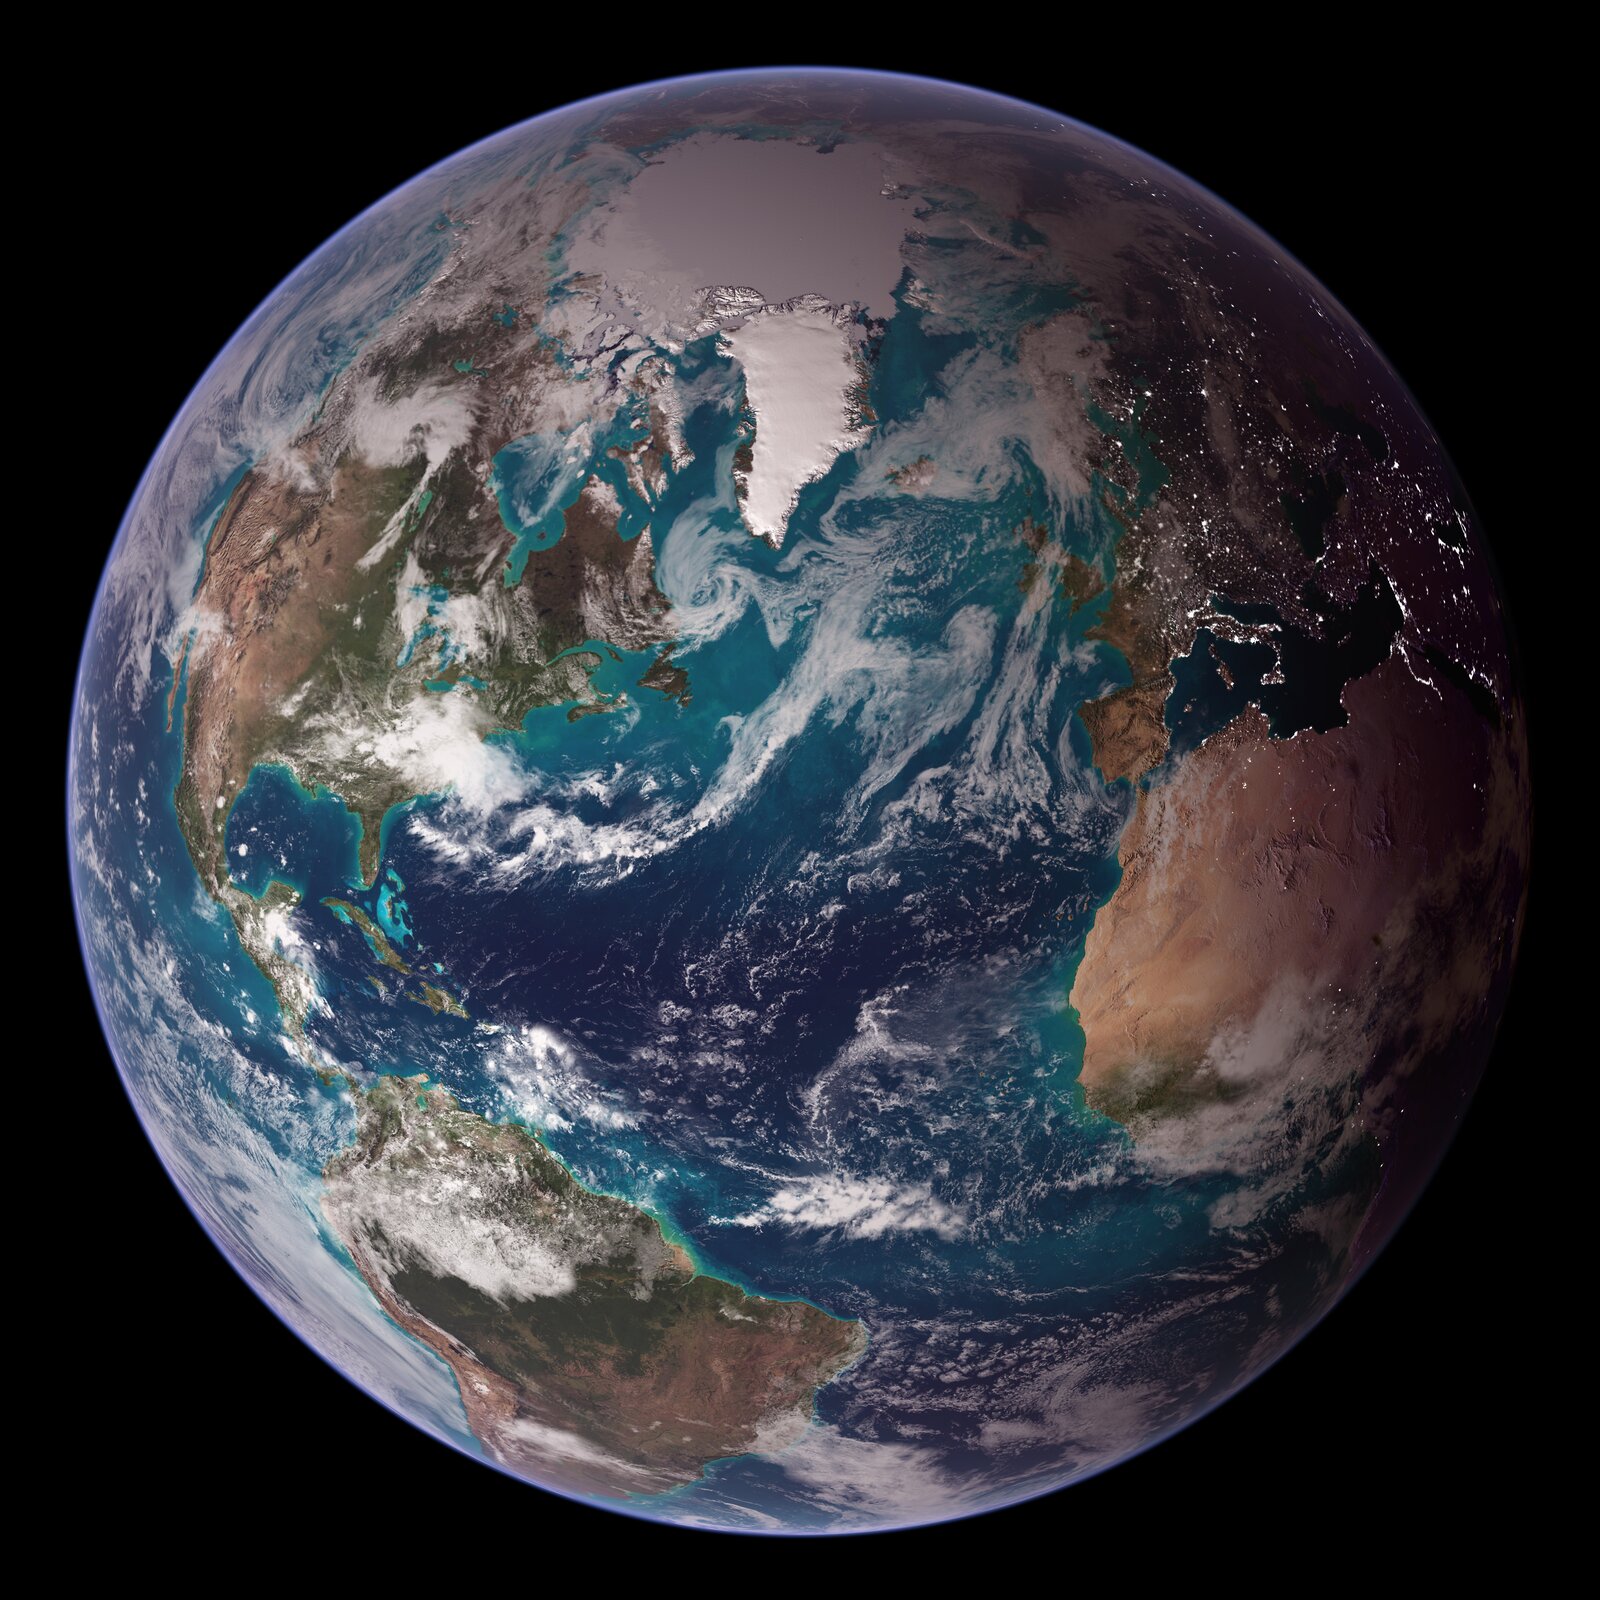 Ilustracja przedstawia zdjęcie satelitarne Ziemi. Po lewej stronie kuli ziemskiej znajduje się Ameryka Północna i Południowa, w centralnej części Ocean Atlantycki, po prawej stronie zanjdują się Afryka i Europa. W górnej części Grenlandia pokryta lądolodem i czapa lodowa pokrywająca Ocean Arktyczny. Kula ziemska gdzieniegdzie przysłonięta obłokami chmur.